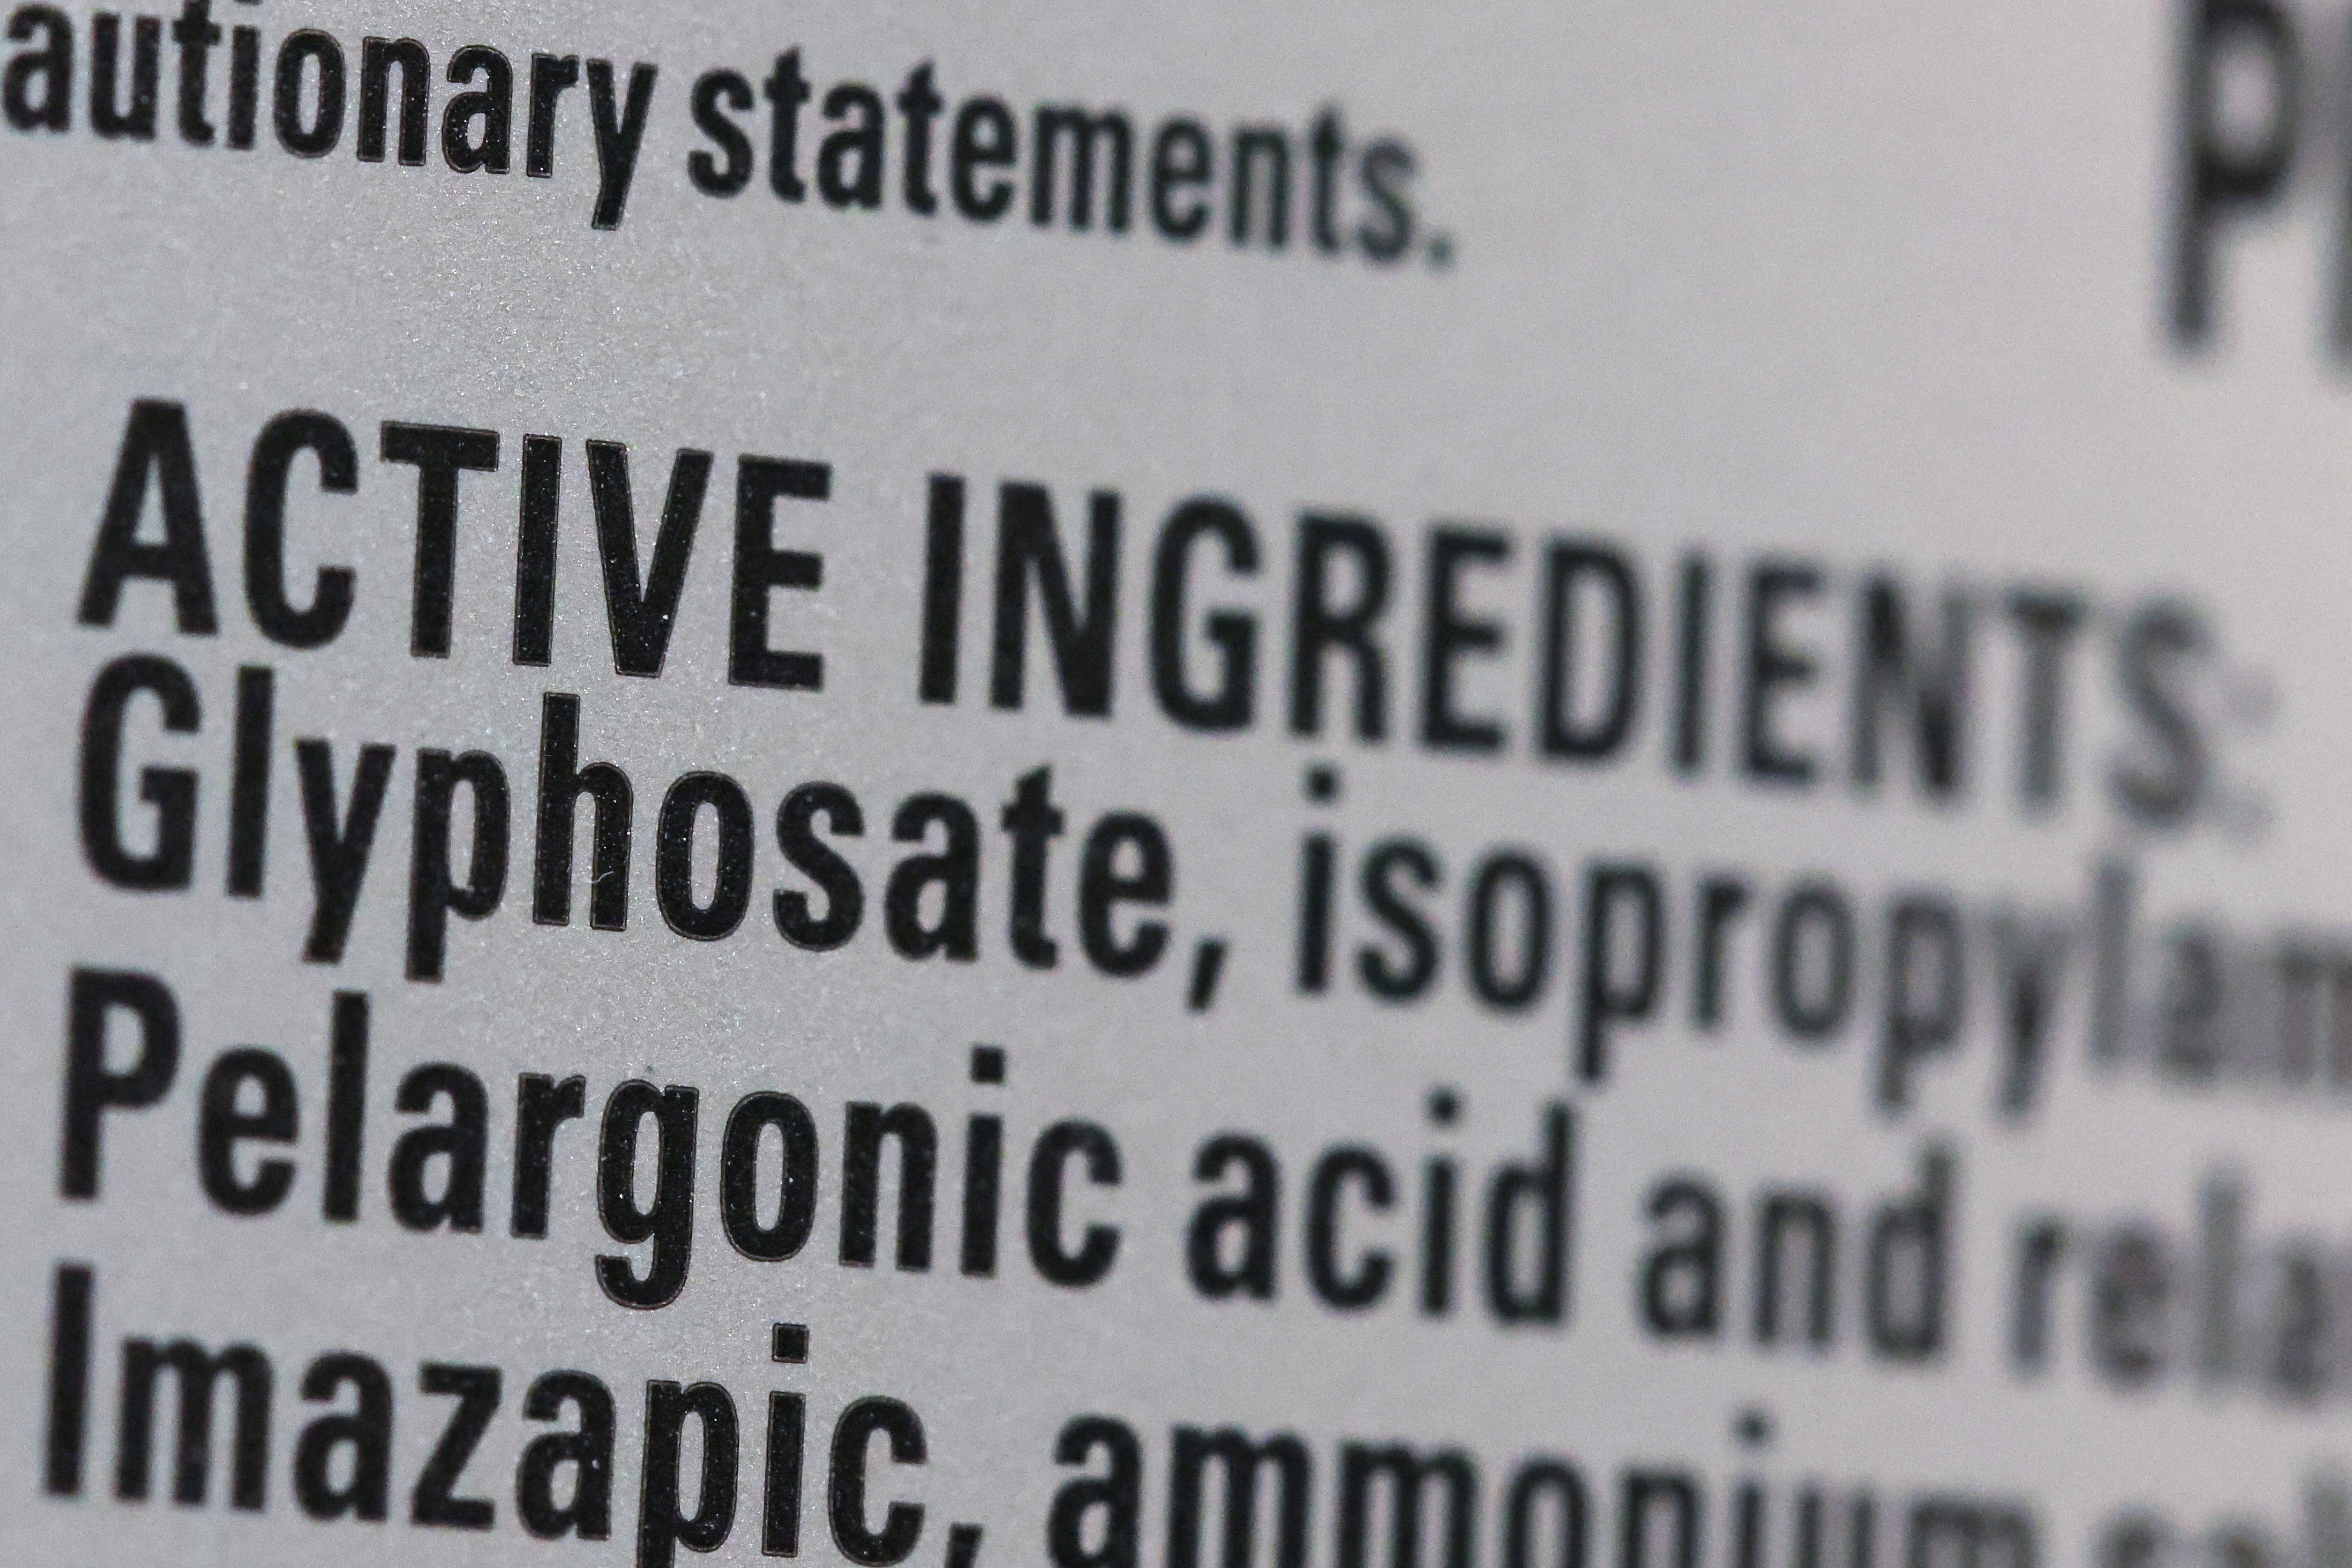 Glyphosate not a carcinogen, EU panel affirms